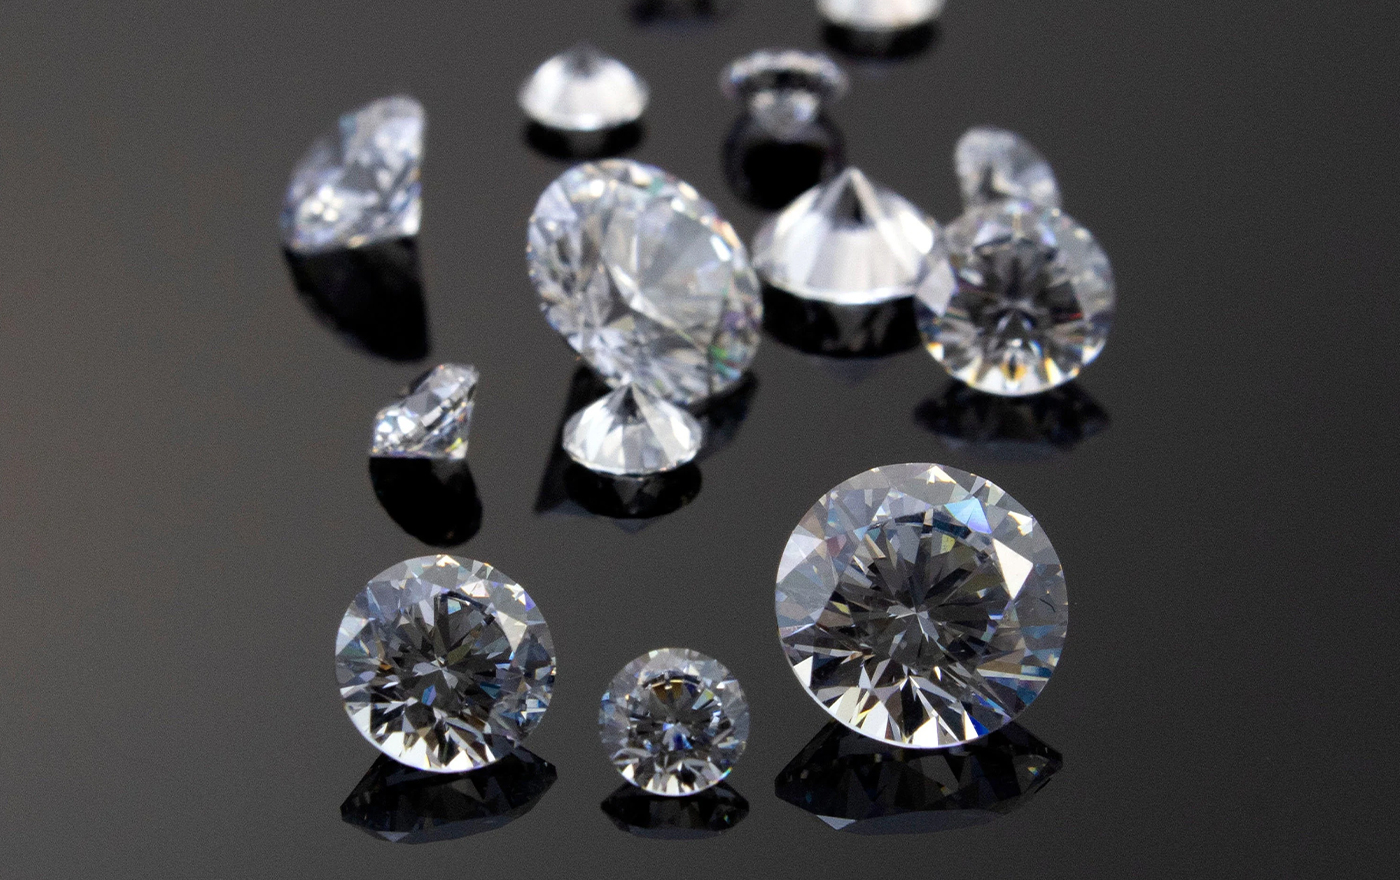 زیرکونیای مکعبی یک جایگزین عالی برای الماس